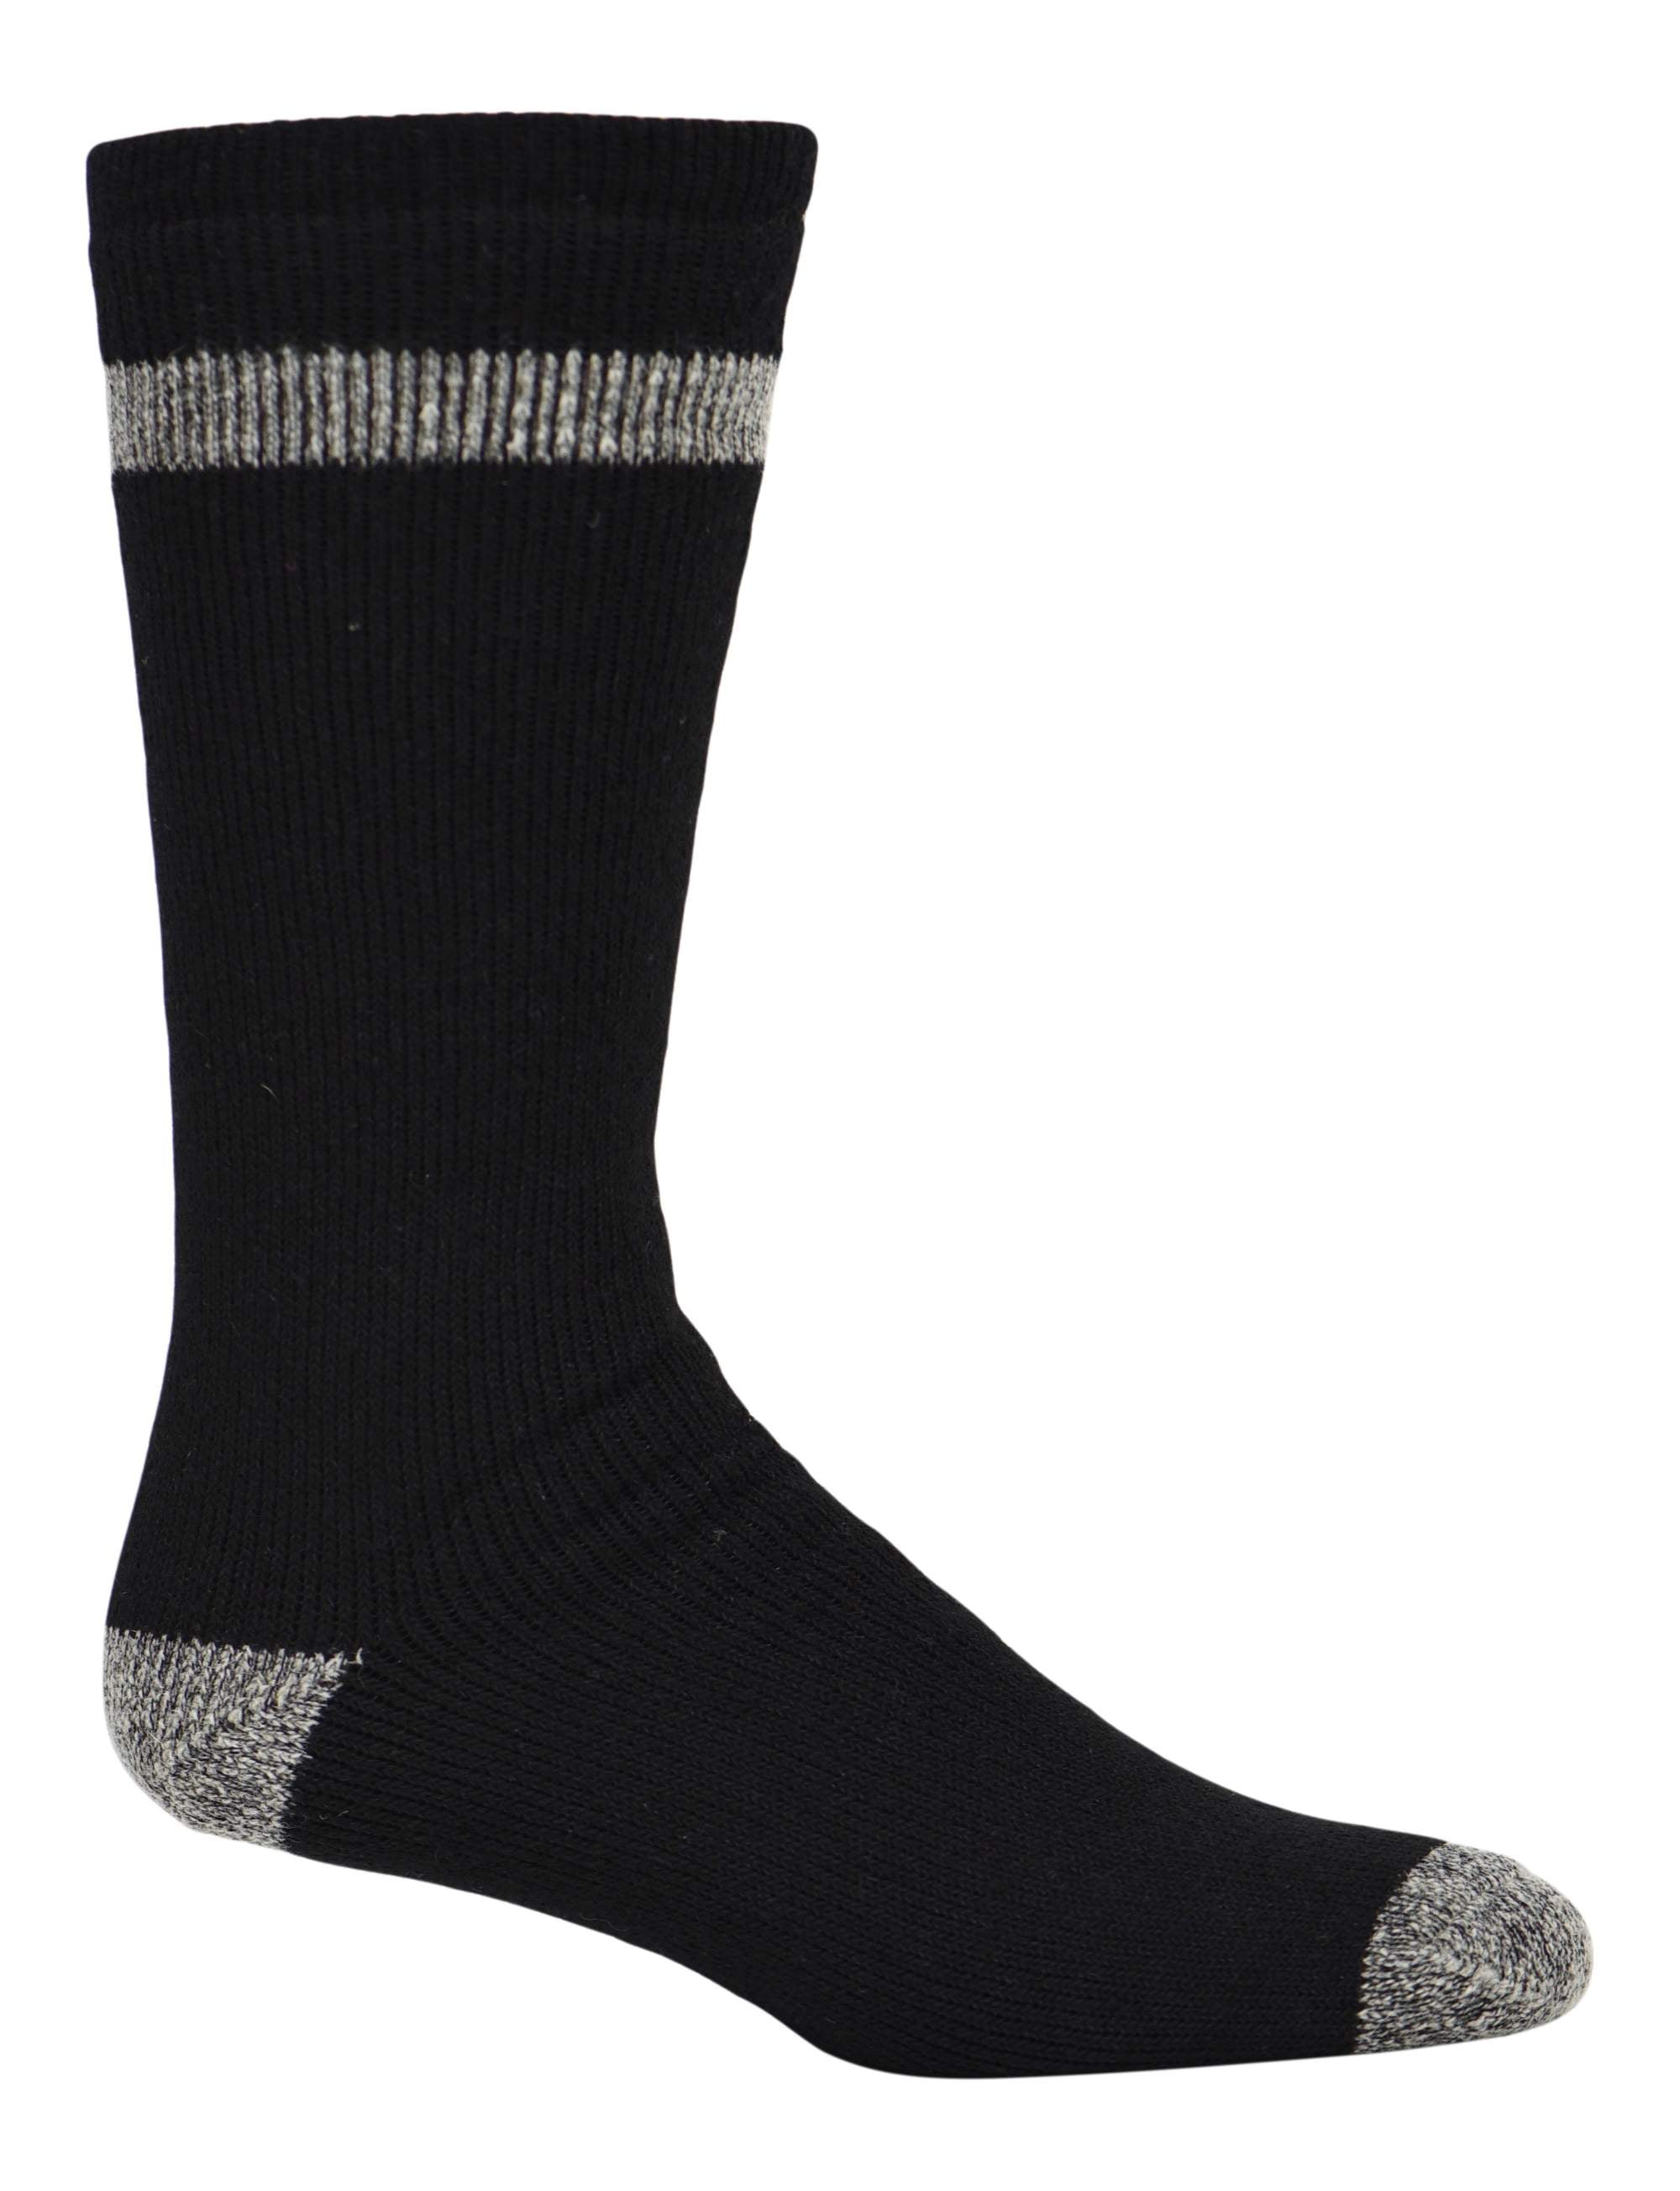 Men's Thermal Wool Socks 2-Pack - Walmart.com